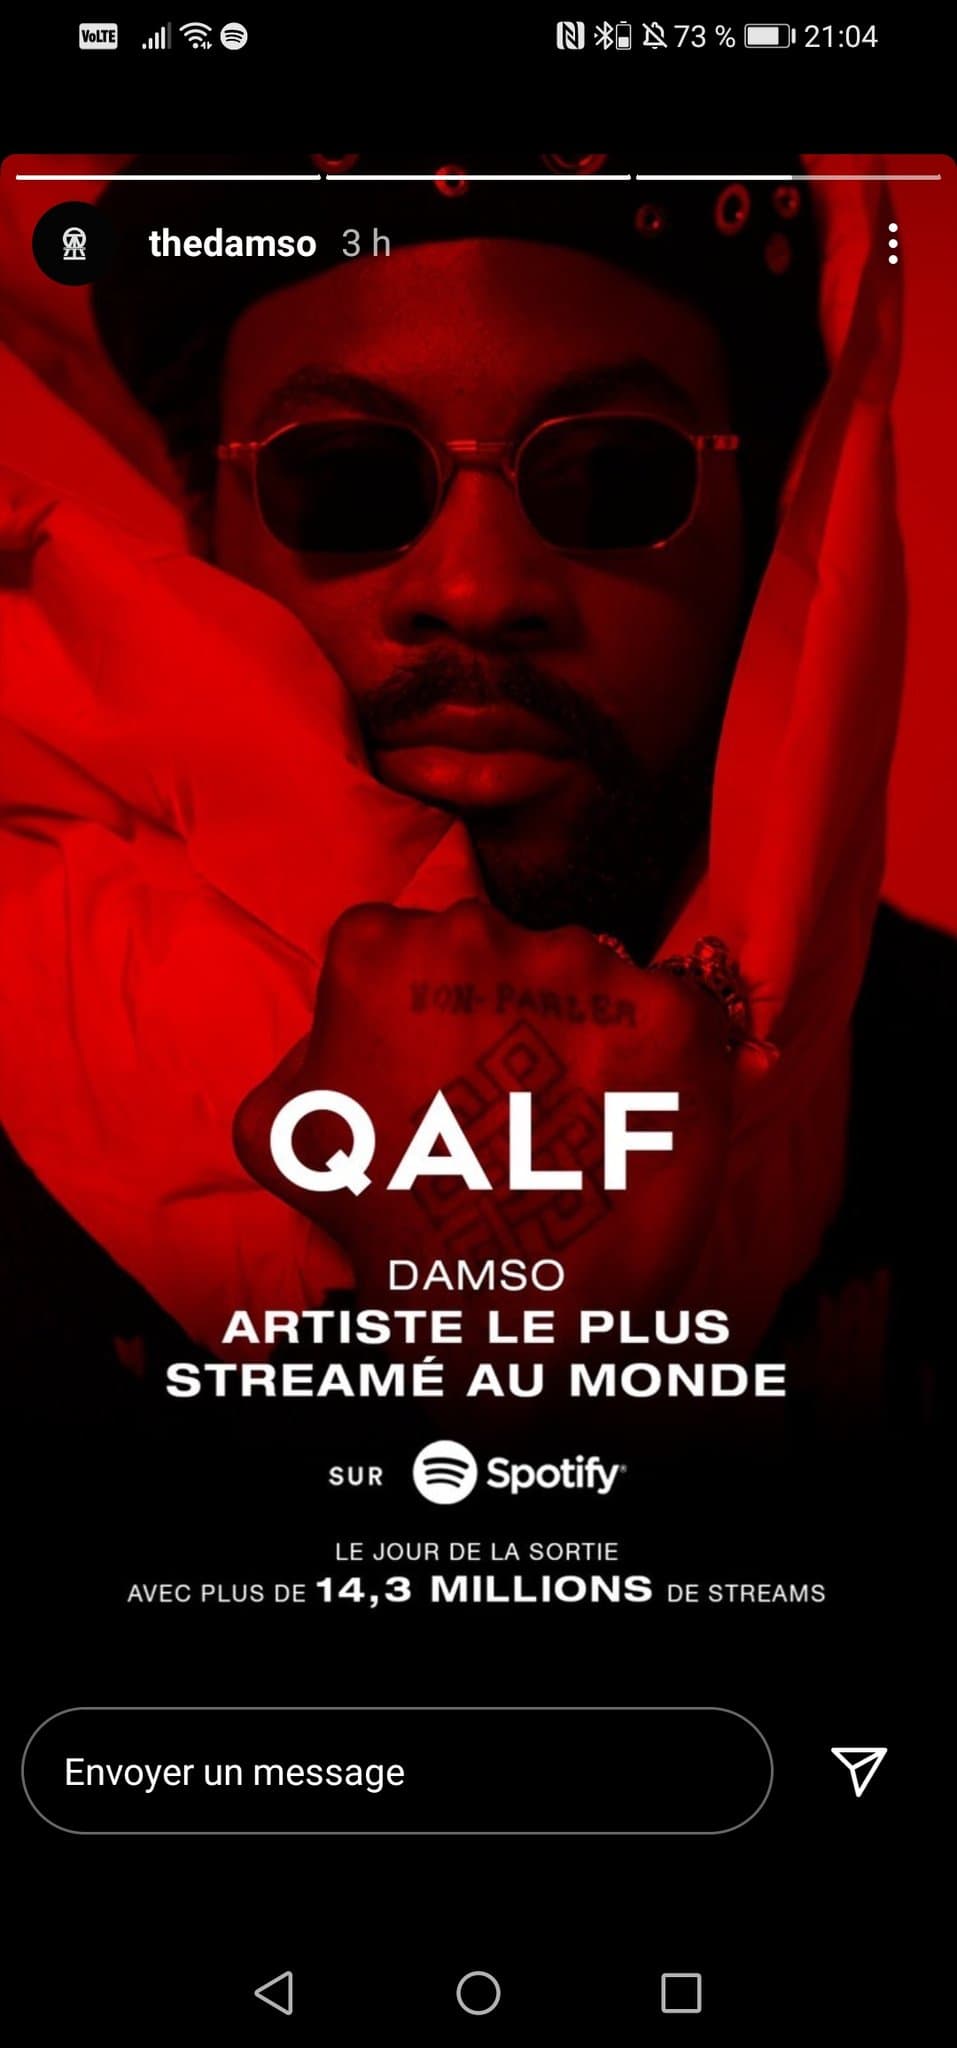 Damso, artiste francophone le plus streamé au monde vendredi